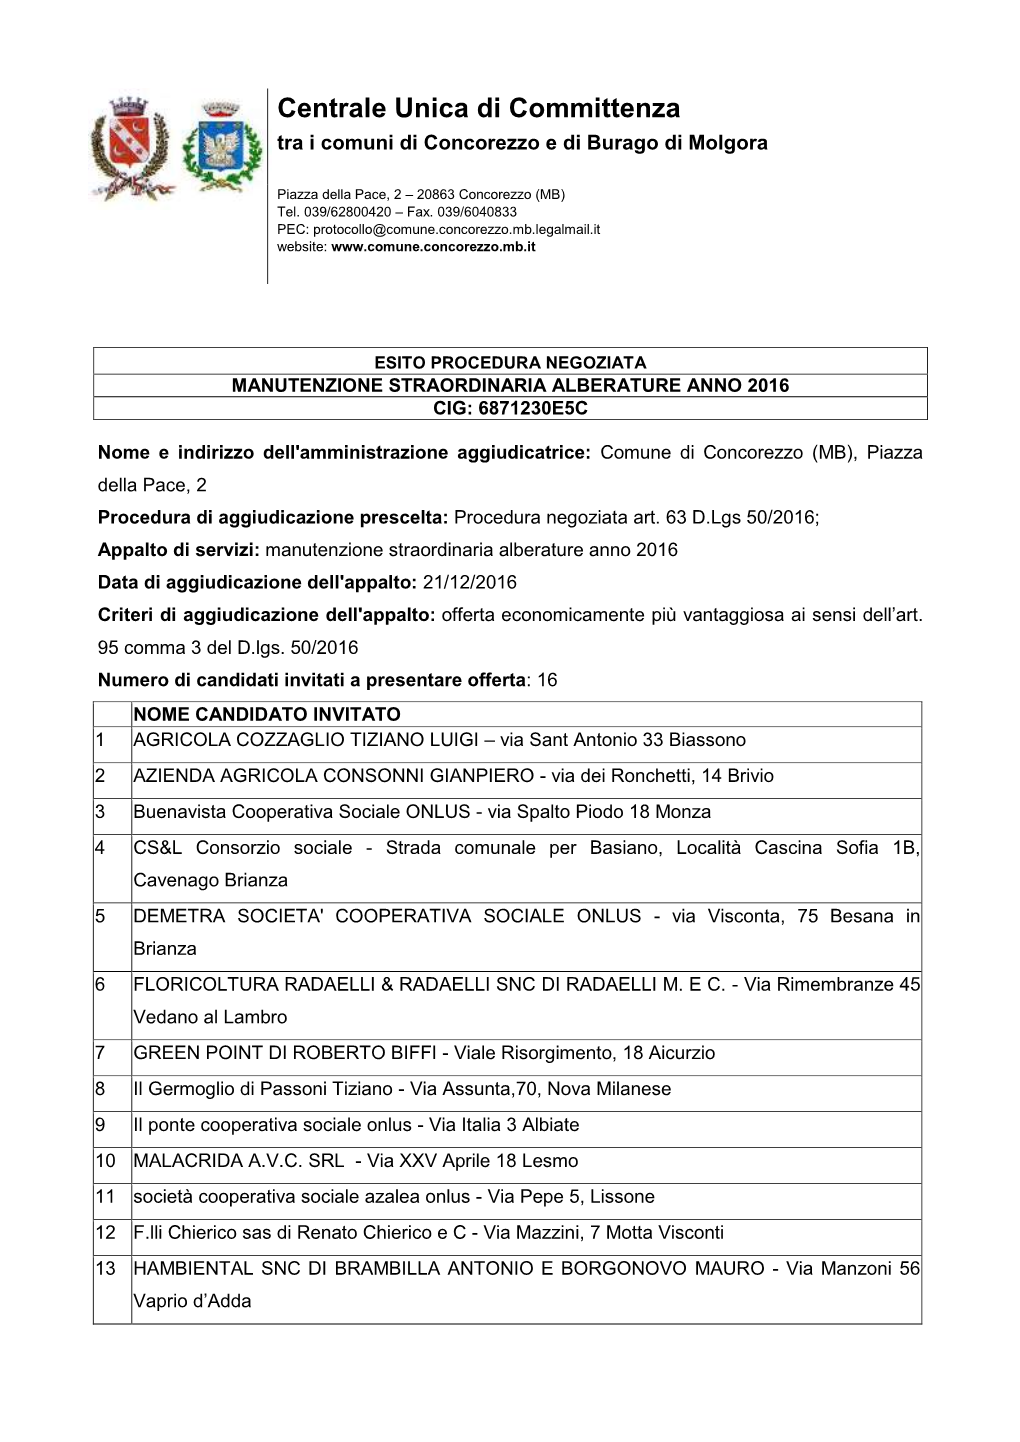 Comune Di Concorezzo (MB), Piazza Della Pace, 2 Procedura Di Aggiudicazione Prescelta: Procedura Negoziata Art